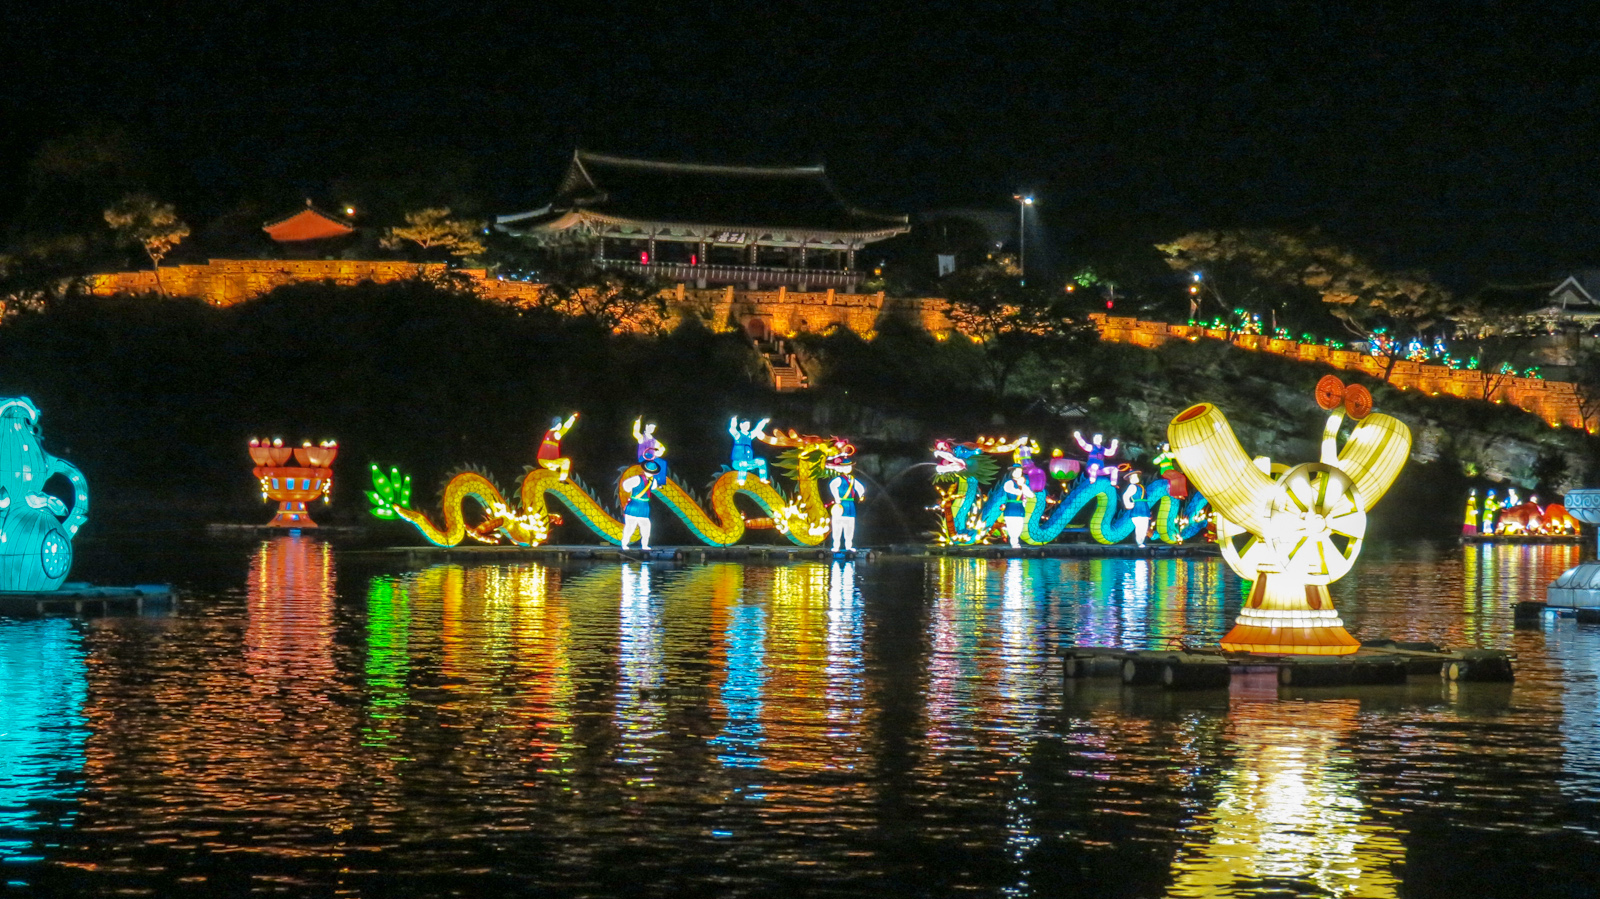 jinju-lantern-festival-dragons-and-castle